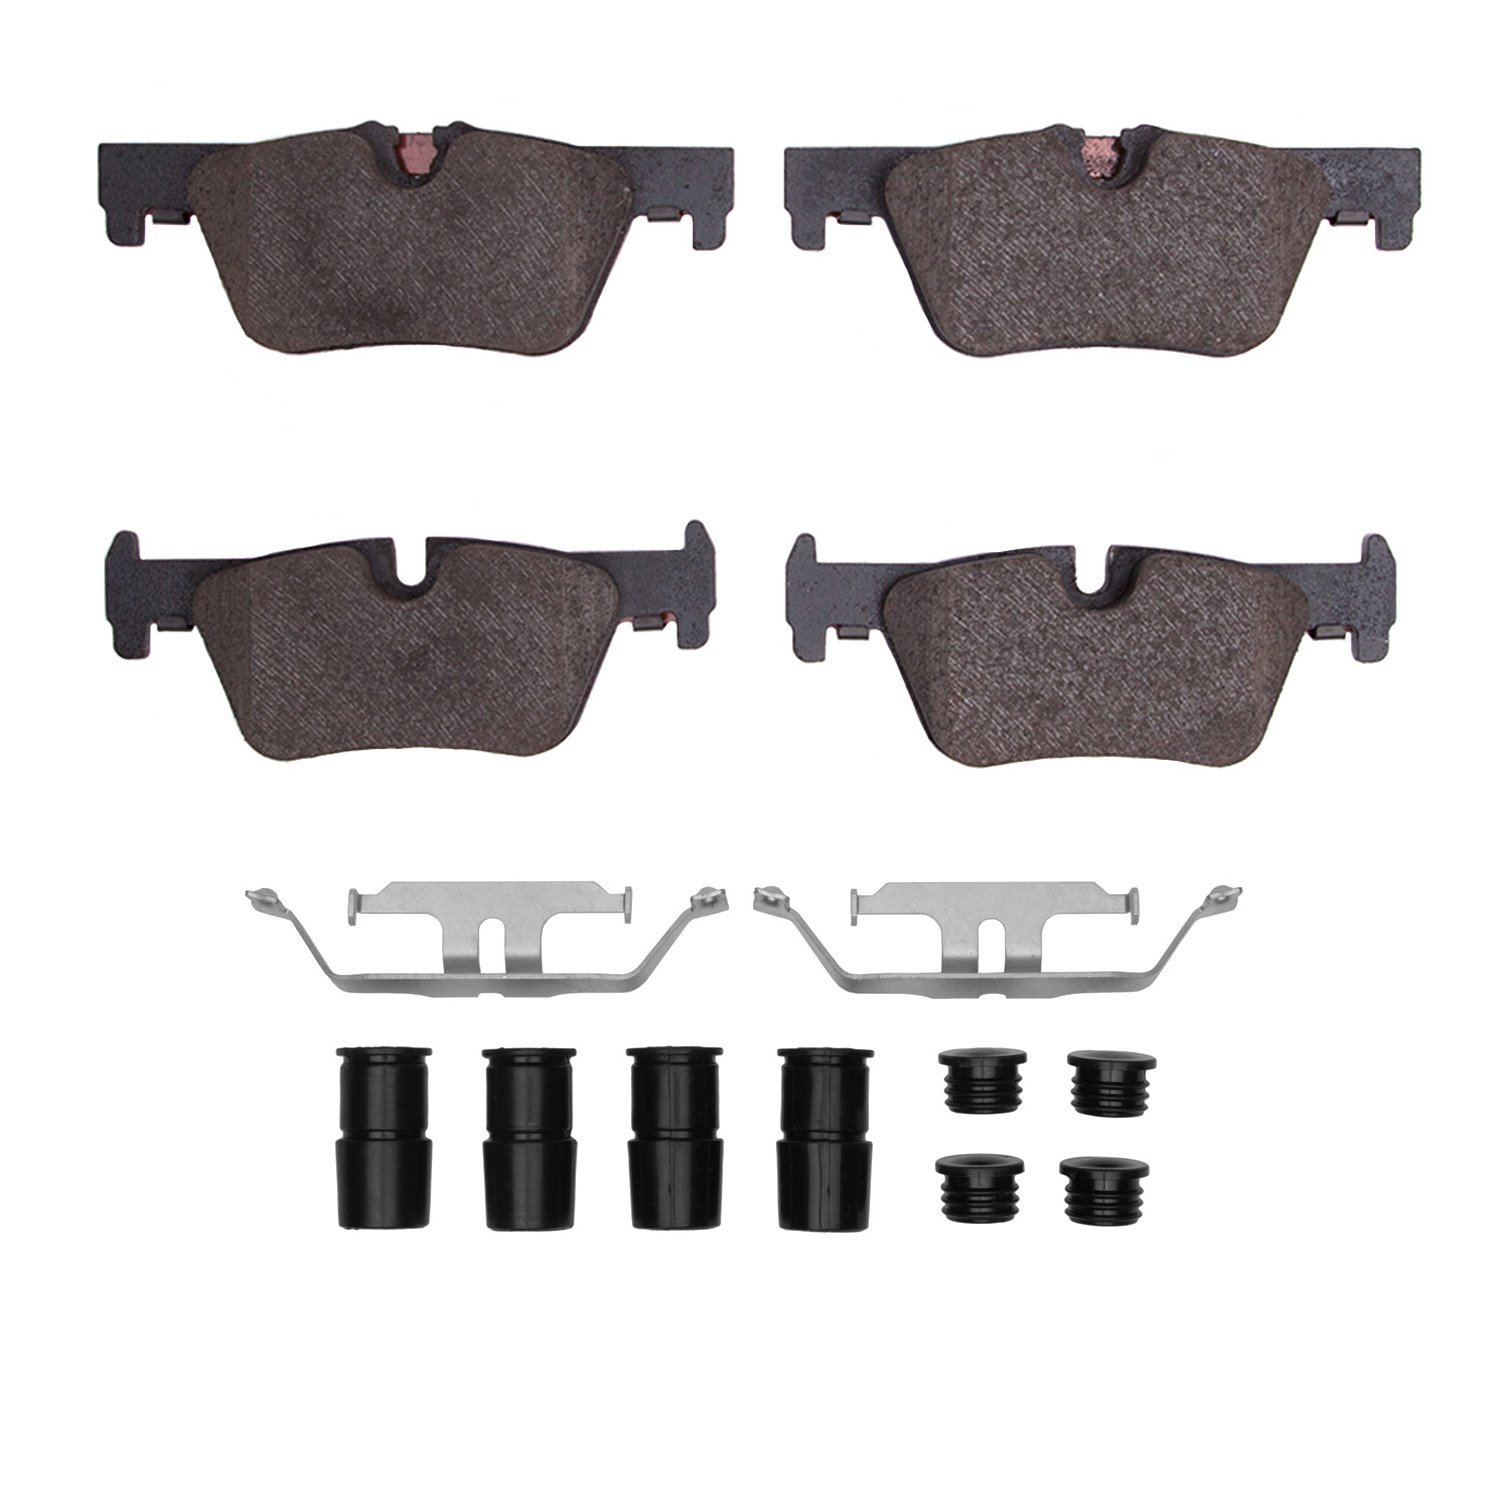 1311-1613-01 3000-Series Semi-Metallic Brake Pads & Hardware Kit, 2012-2021 BMW, Position: Rear